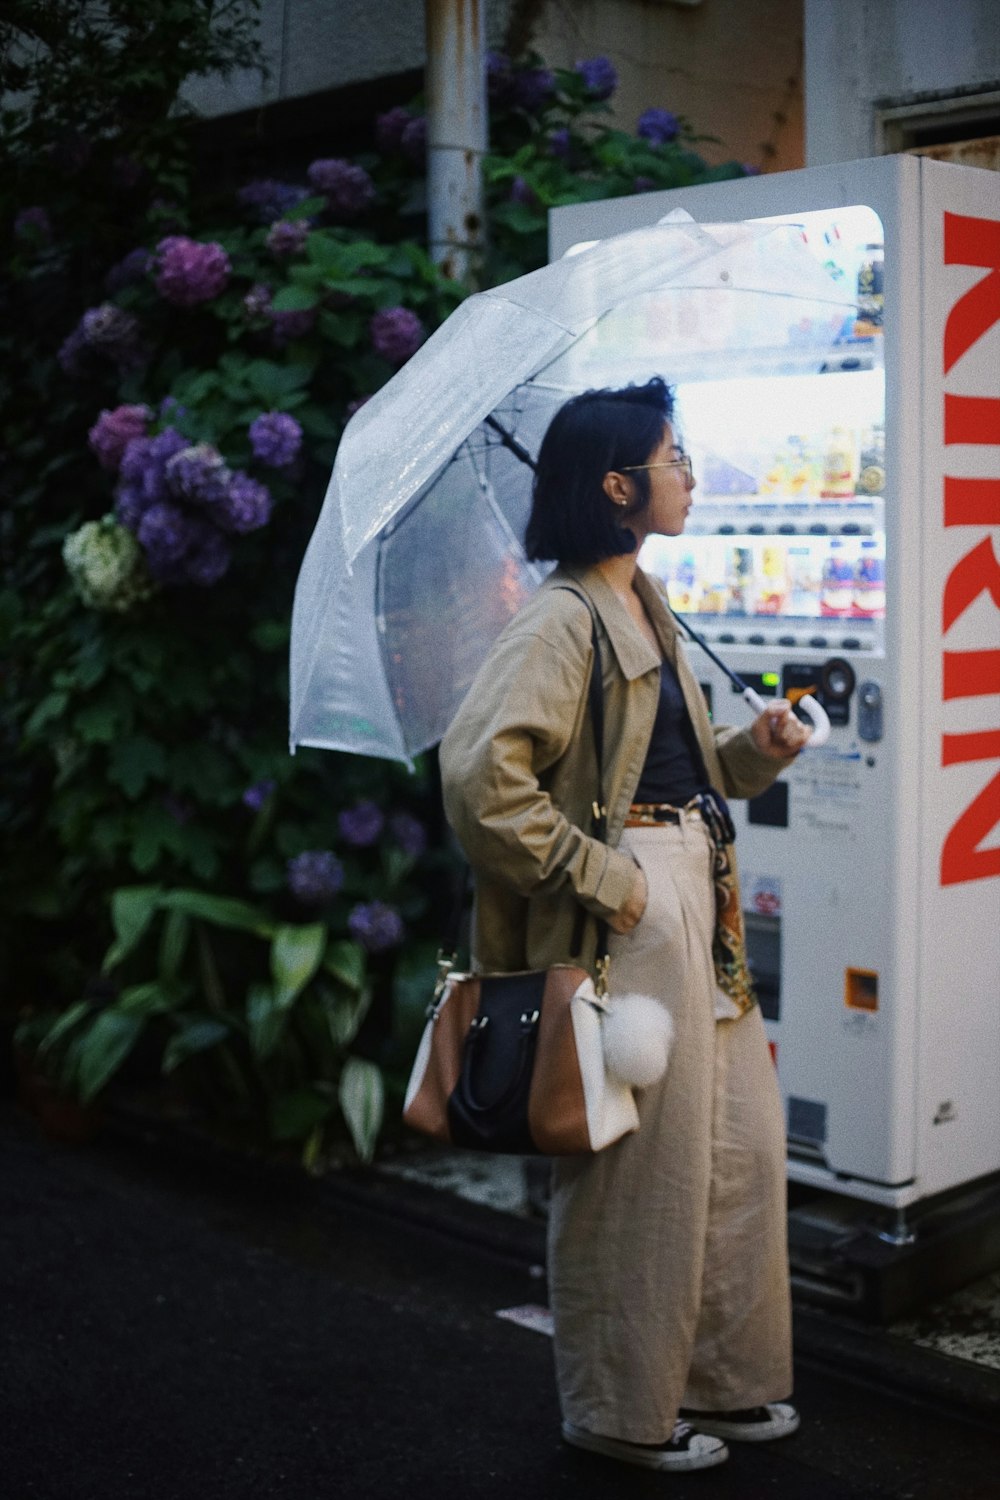 傘を持つ女性